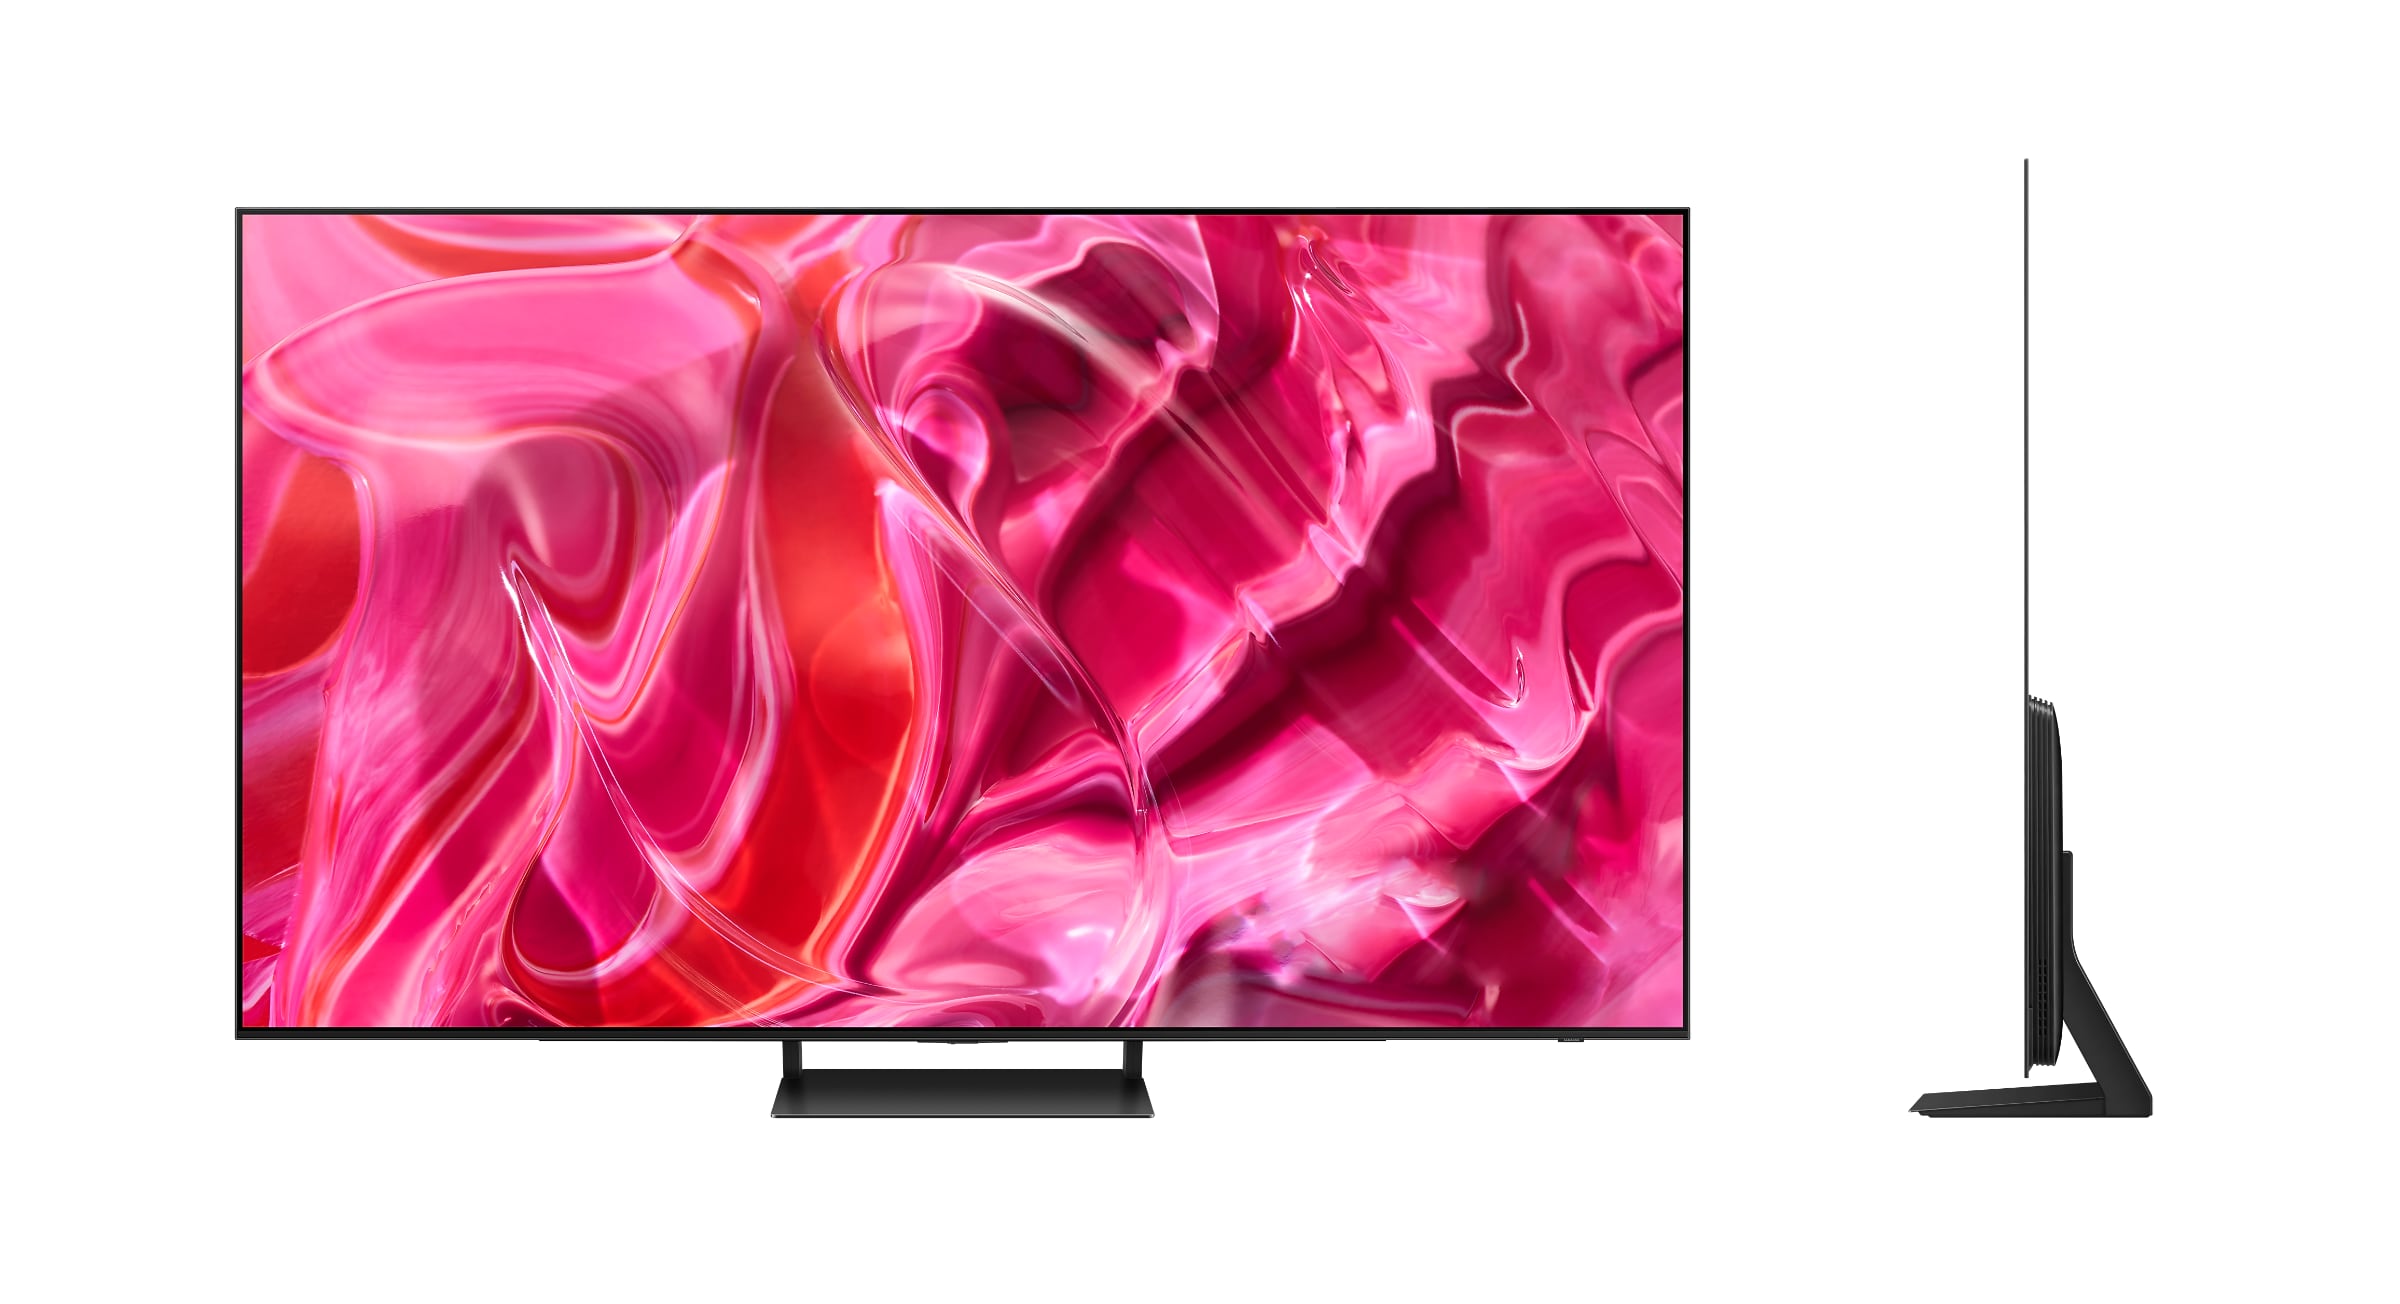 83" Samsung TV med LG-panel kan lande allerede i september - FlatpanelsDK